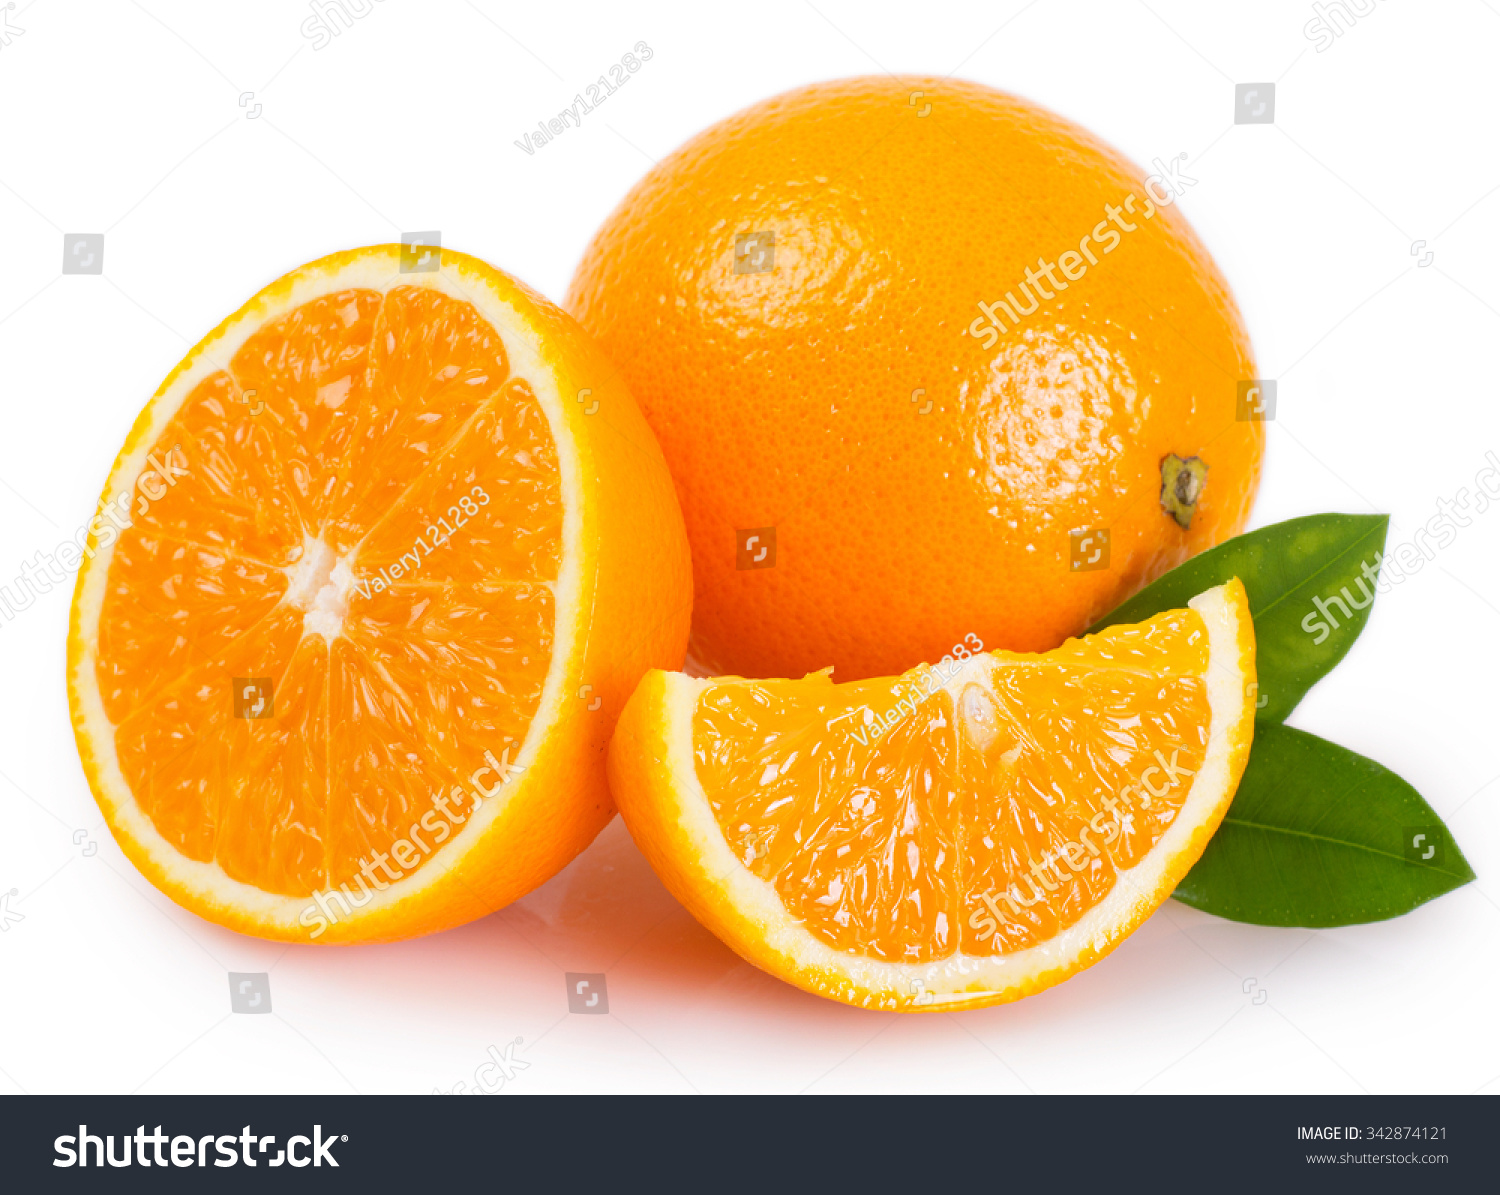 stock-photo-fresh-orange-isolated-on-white-background-342874121.jpg